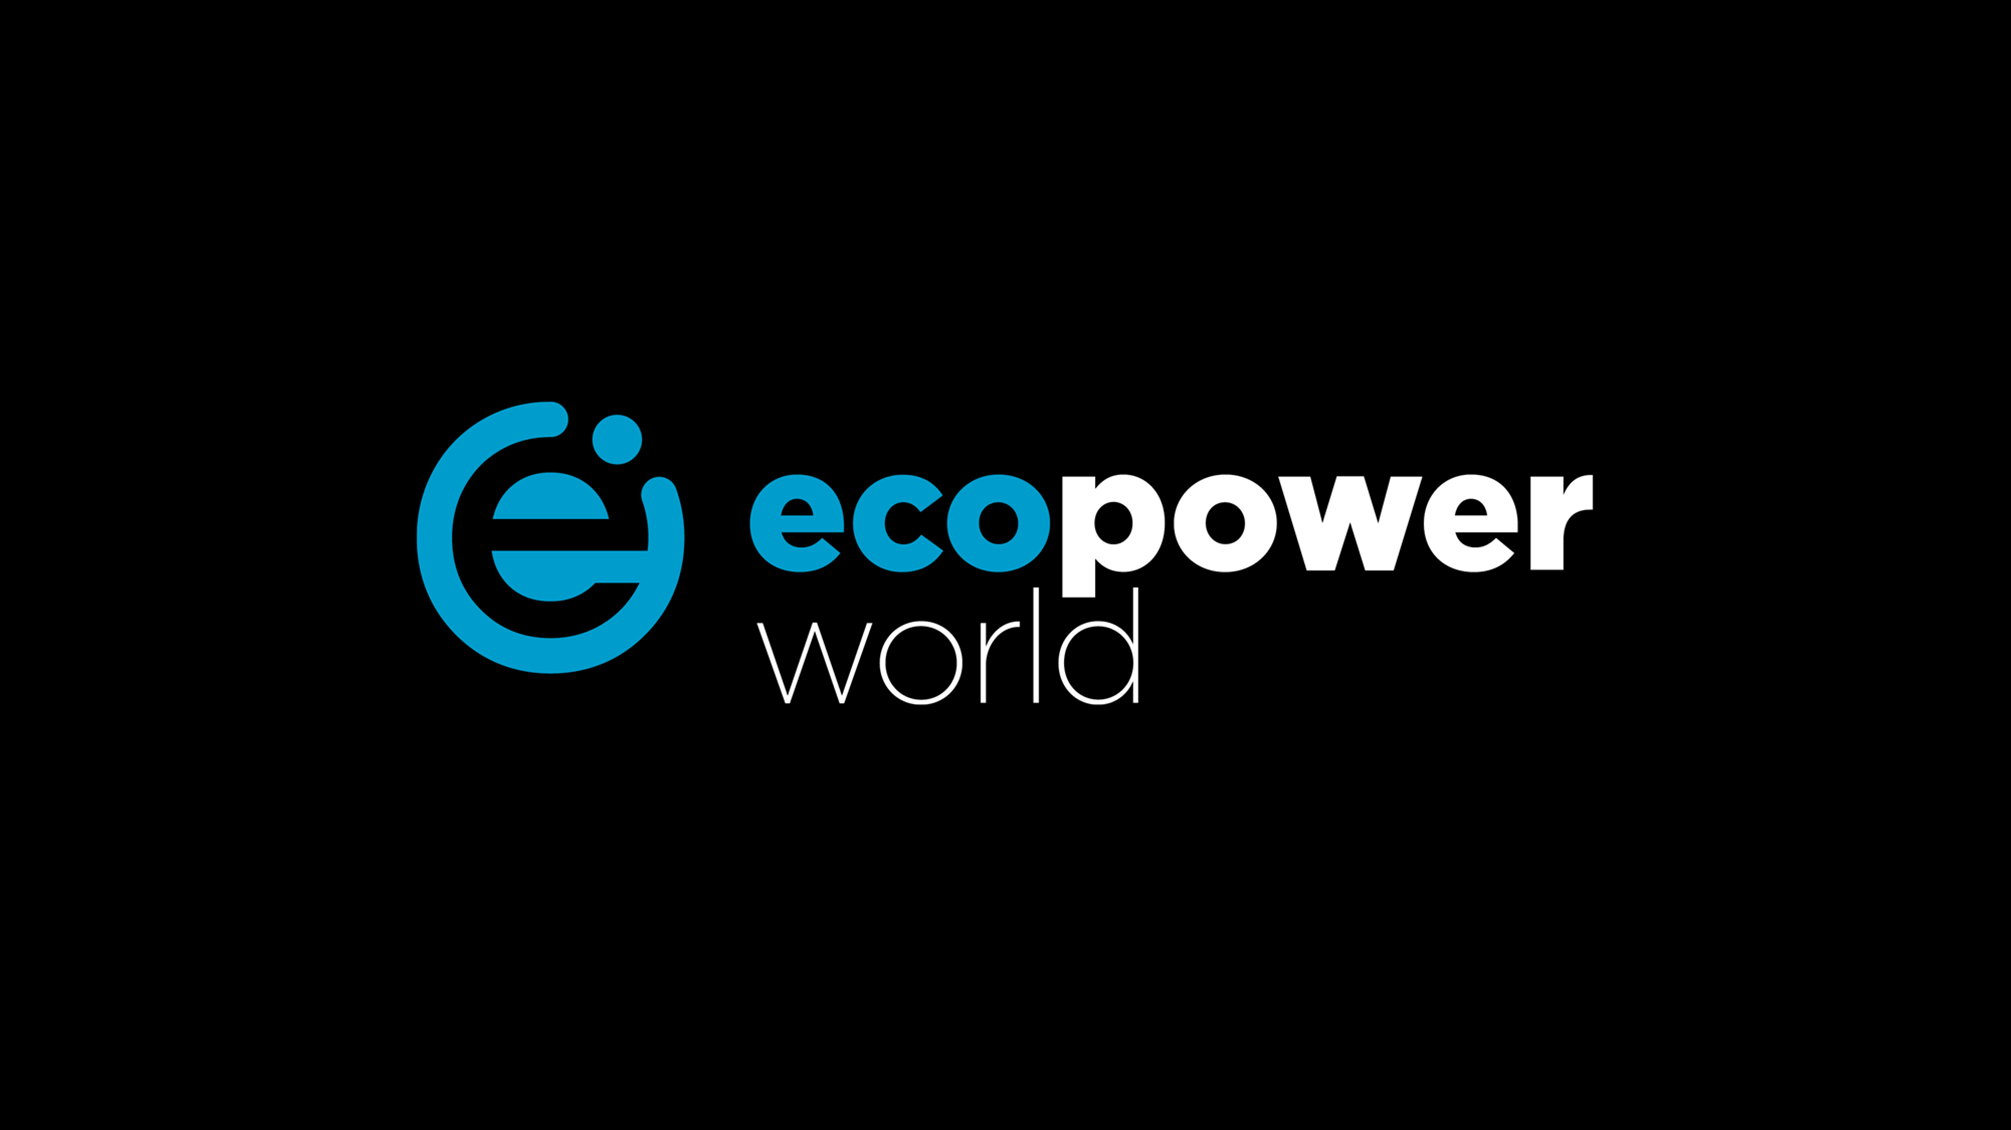 Ecopower World